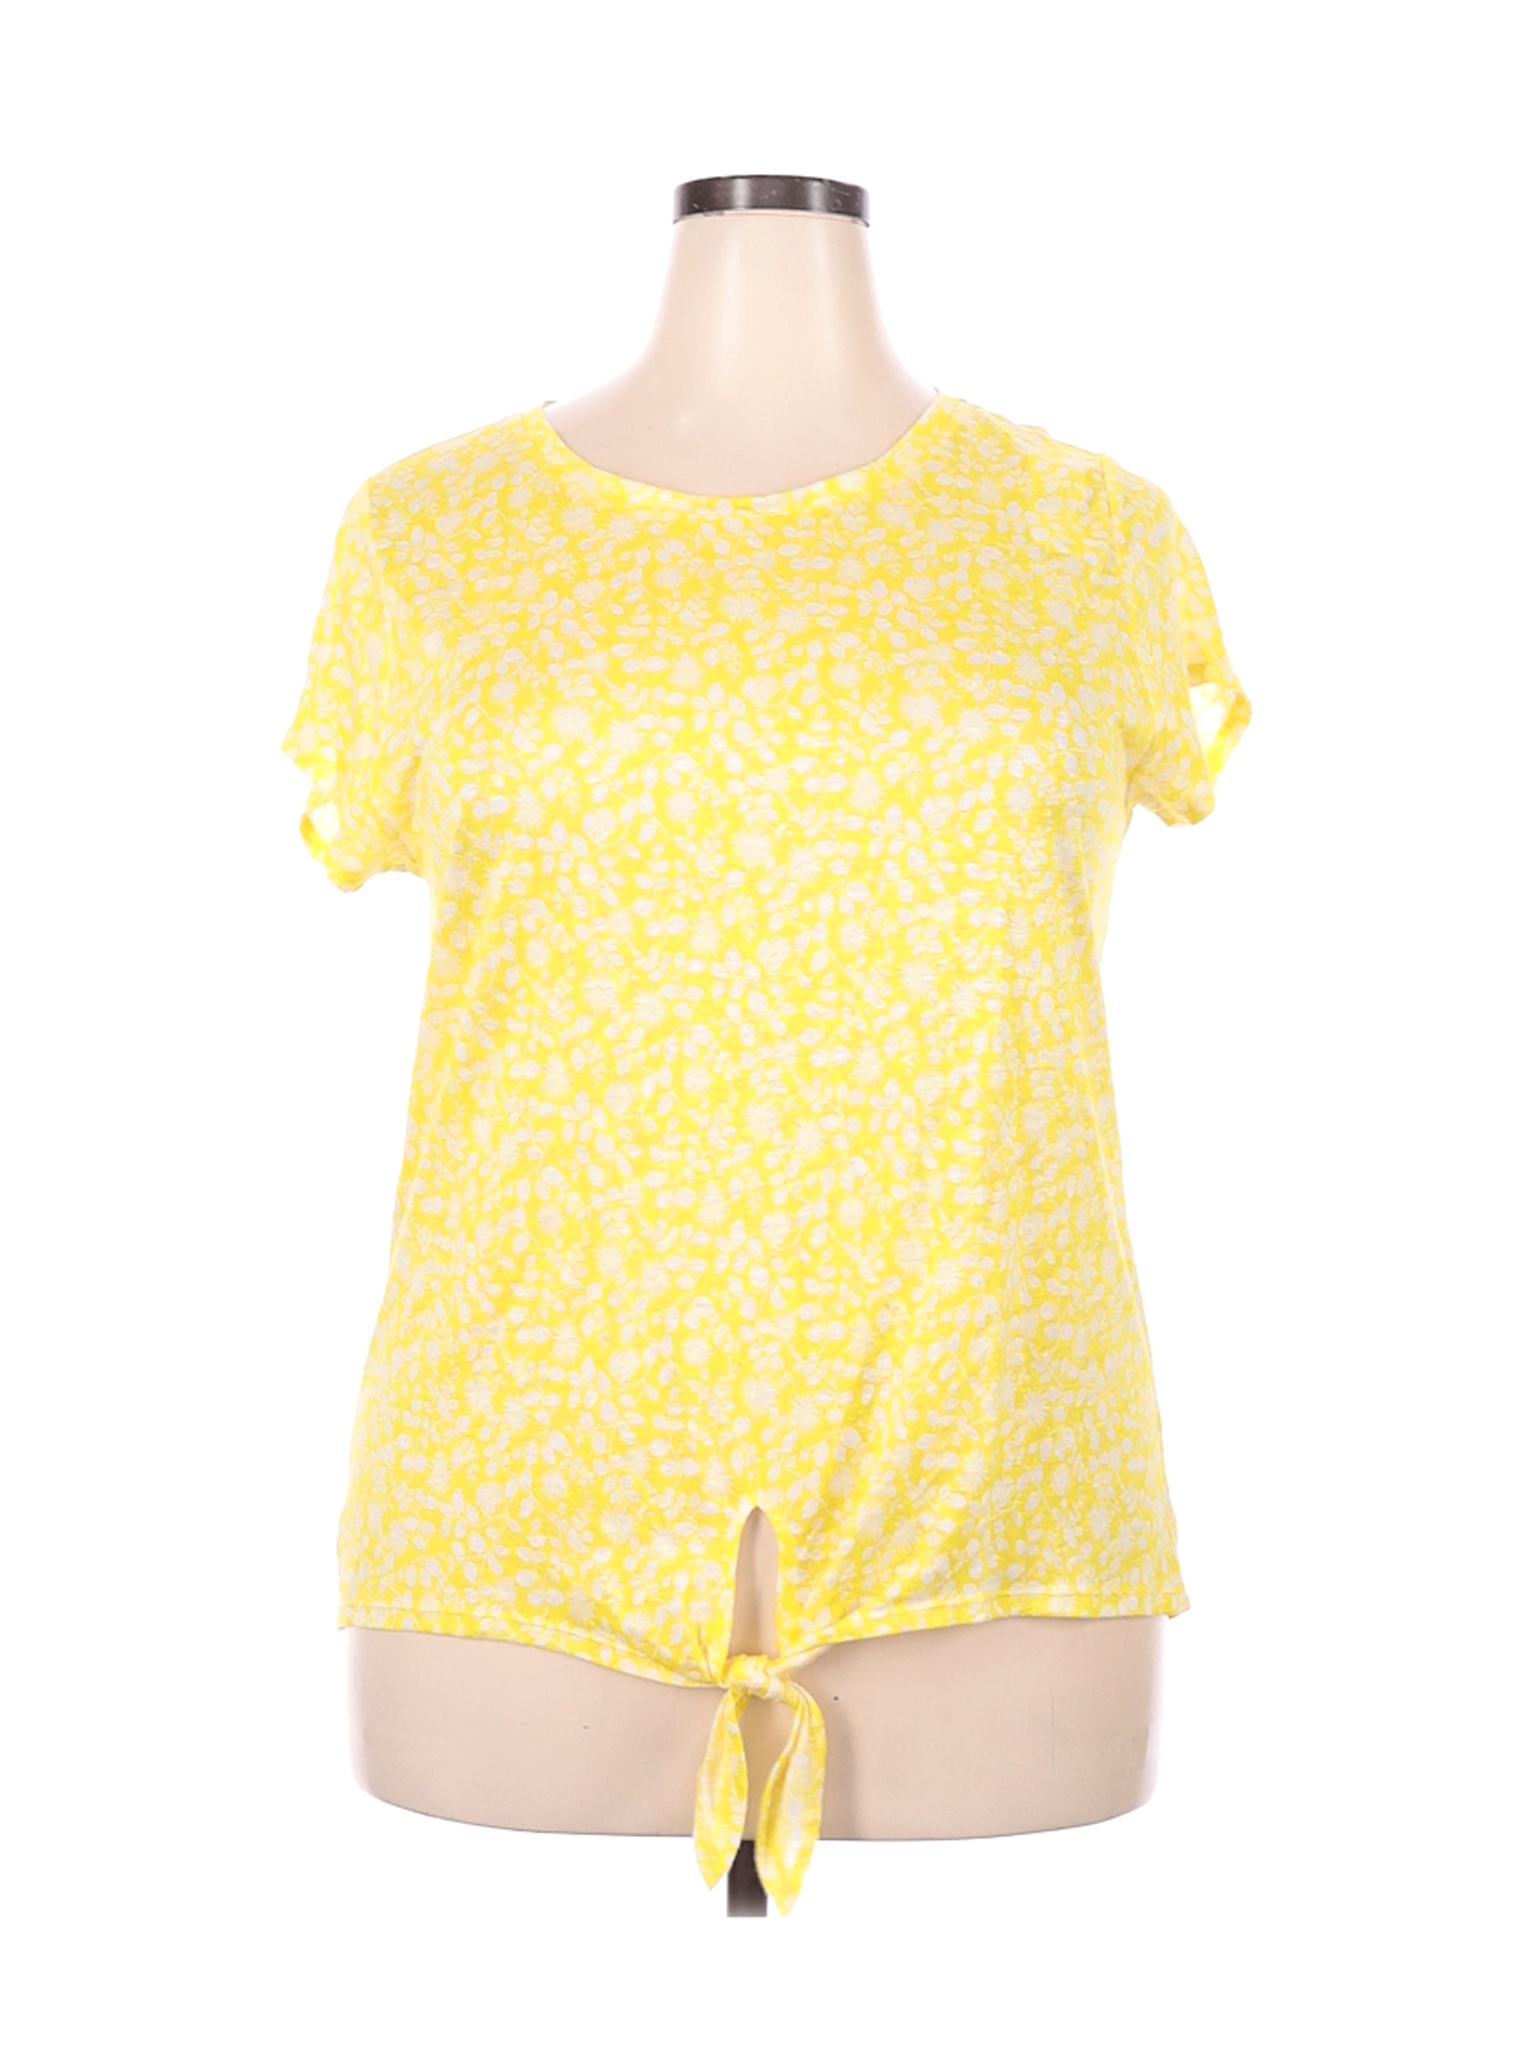 Ann Taylor LOFT Women Yellow Short Sleeve T-Shirt XL | eBay